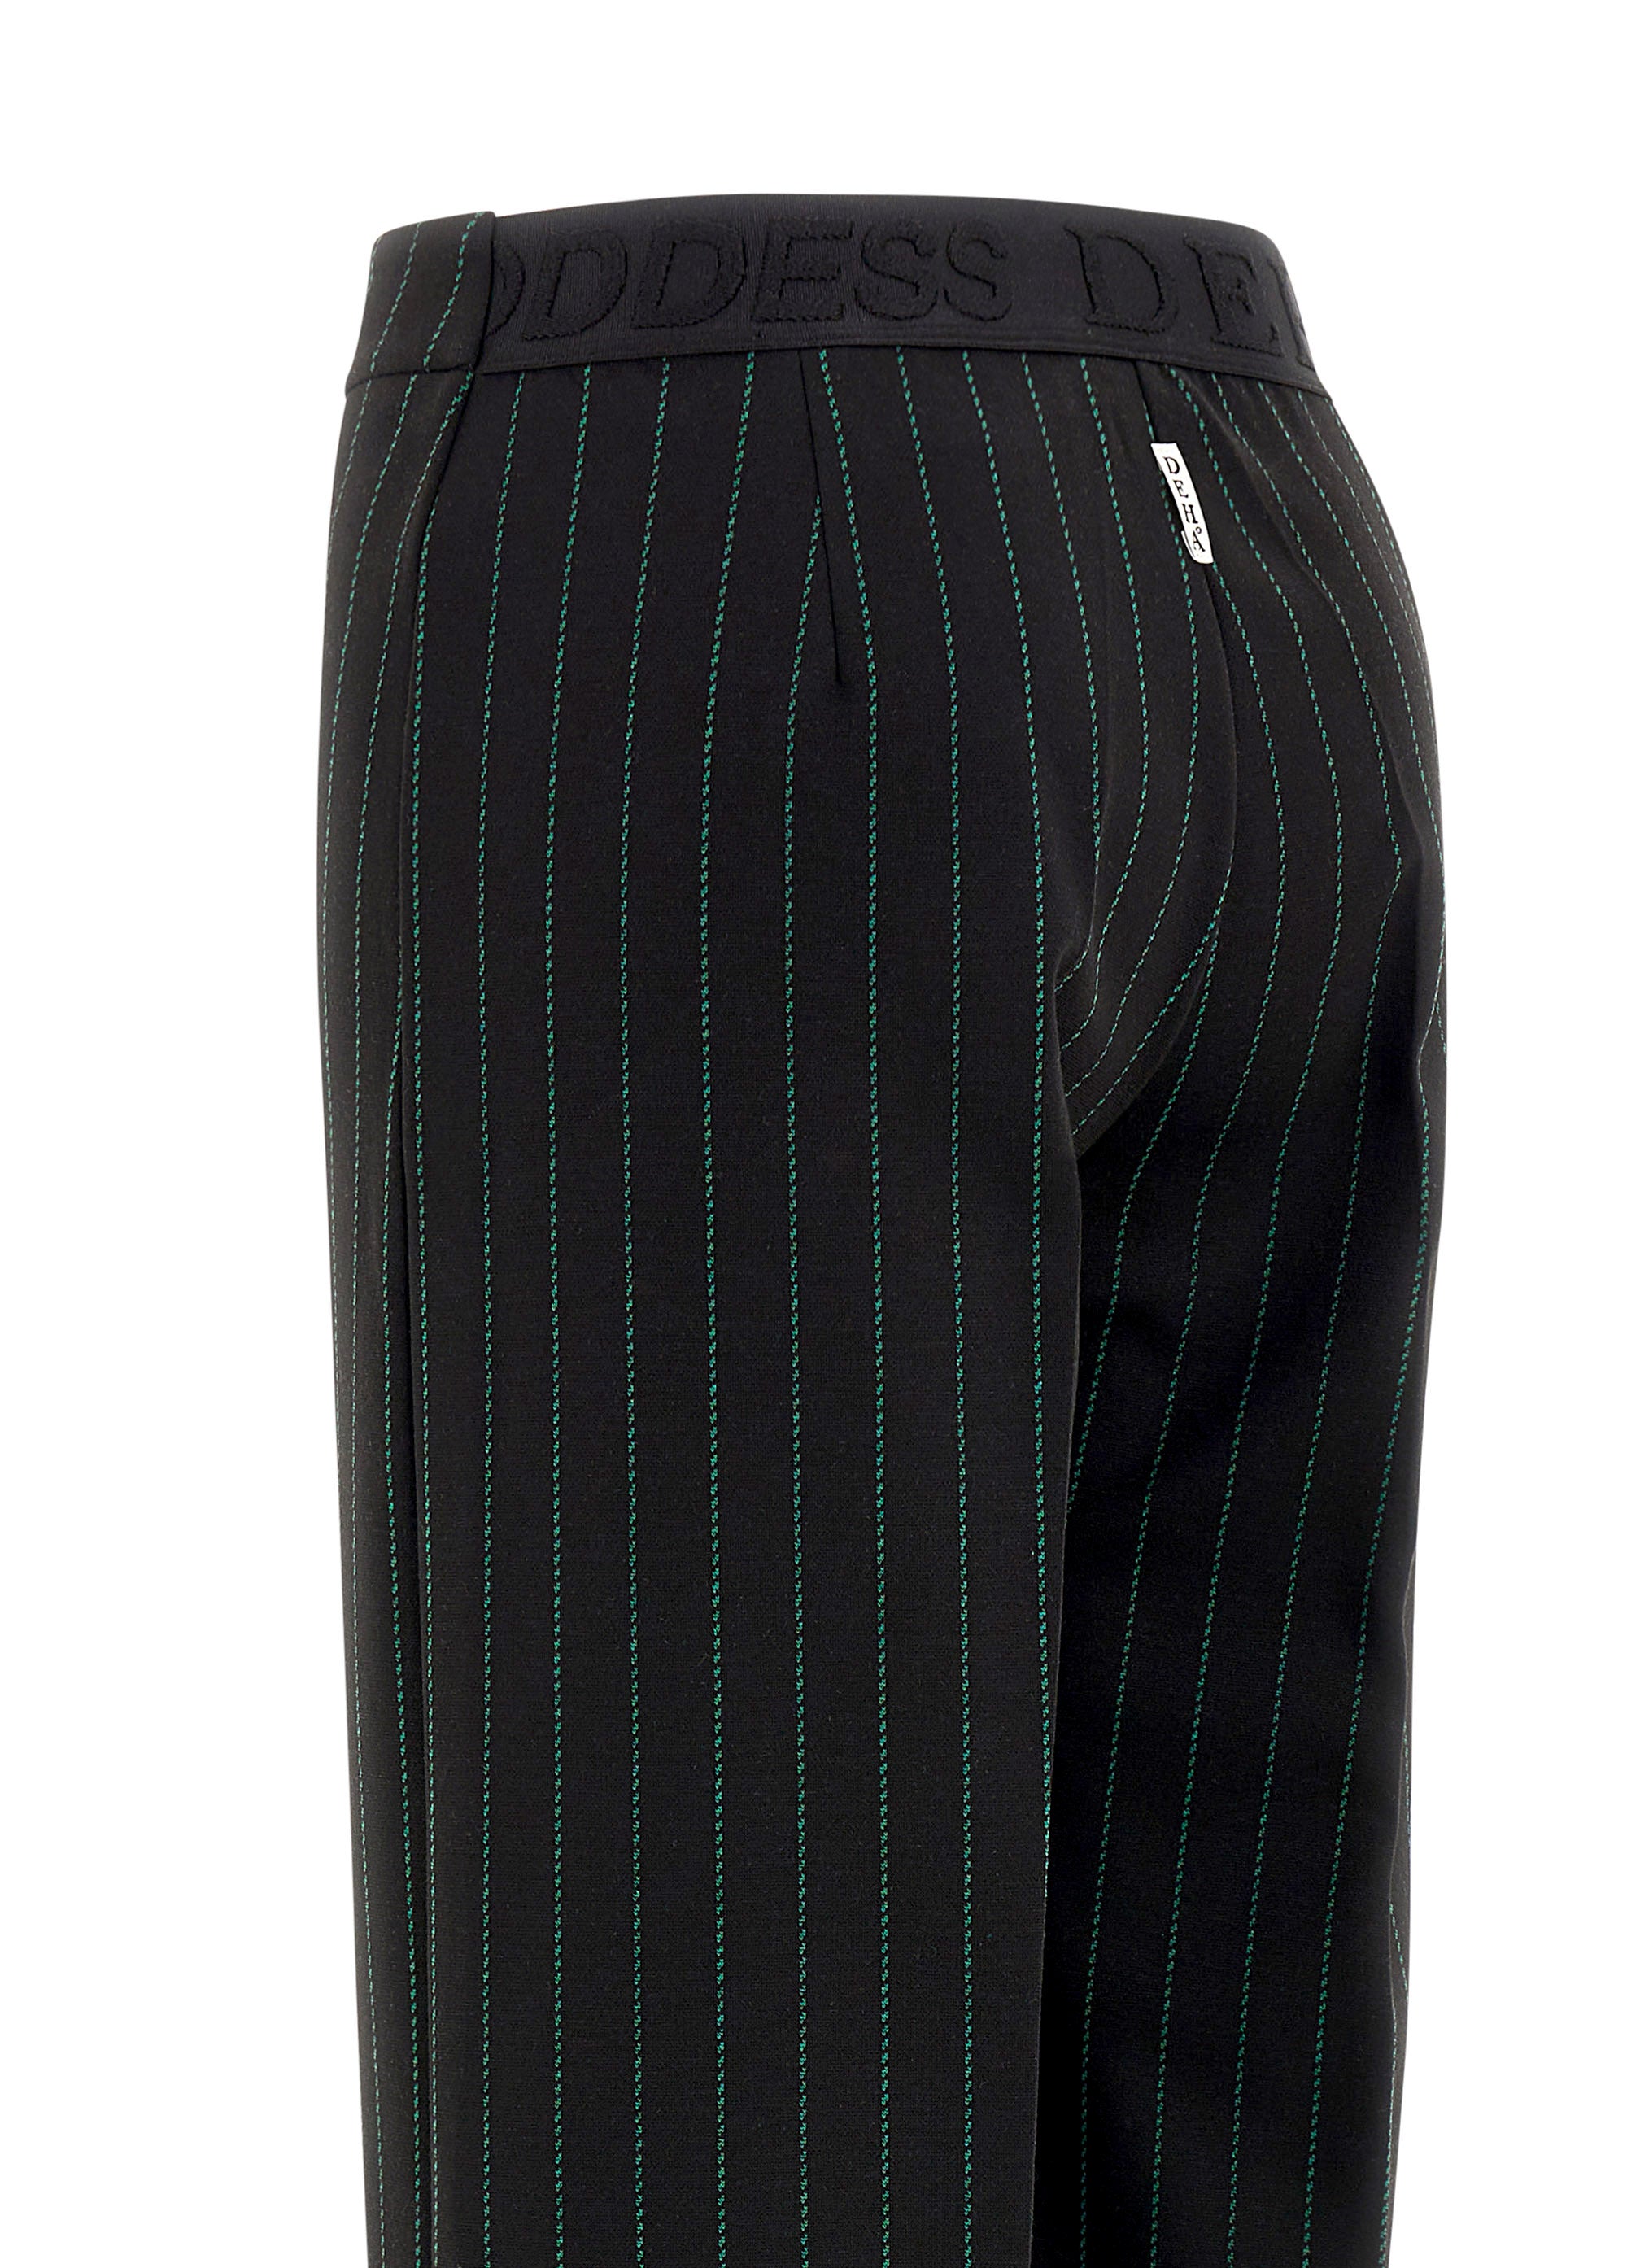 Pinstriped wide leg pants - black/green